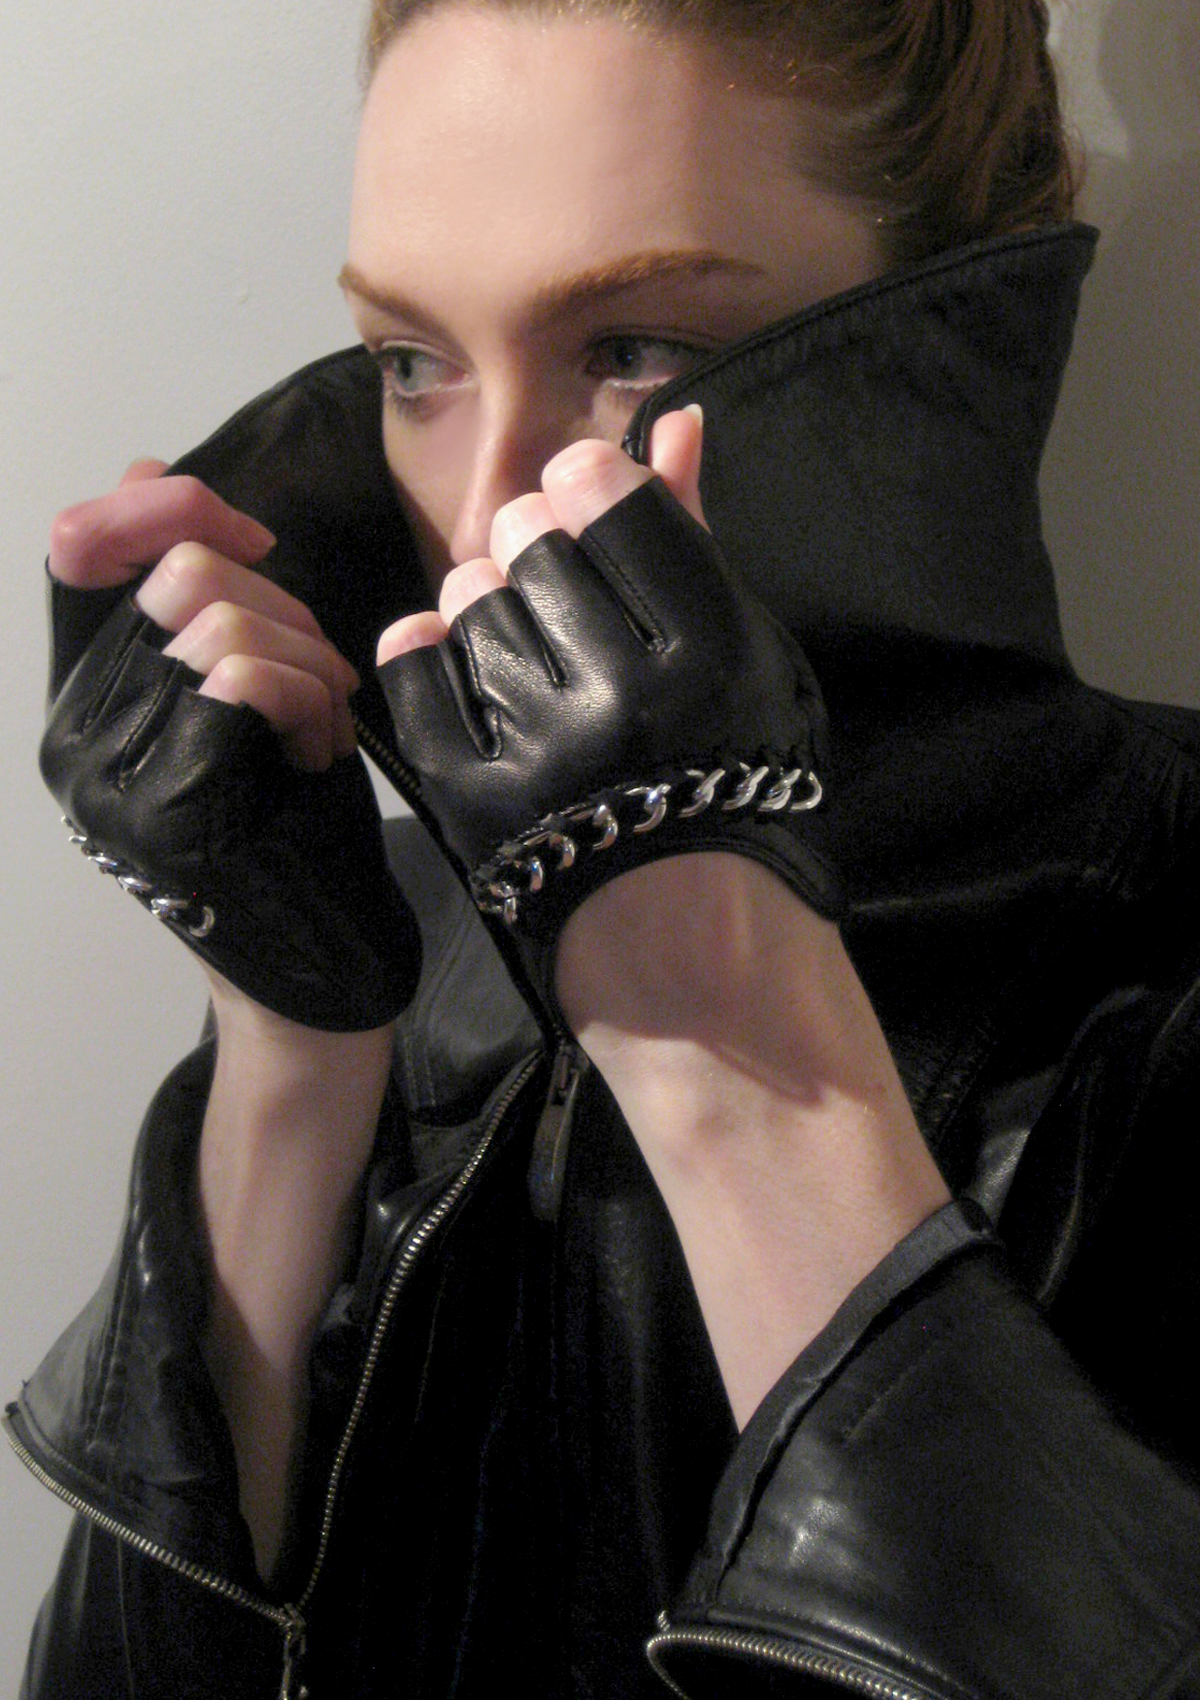 Fingerless Leather & Chain Gloves 7 / Black